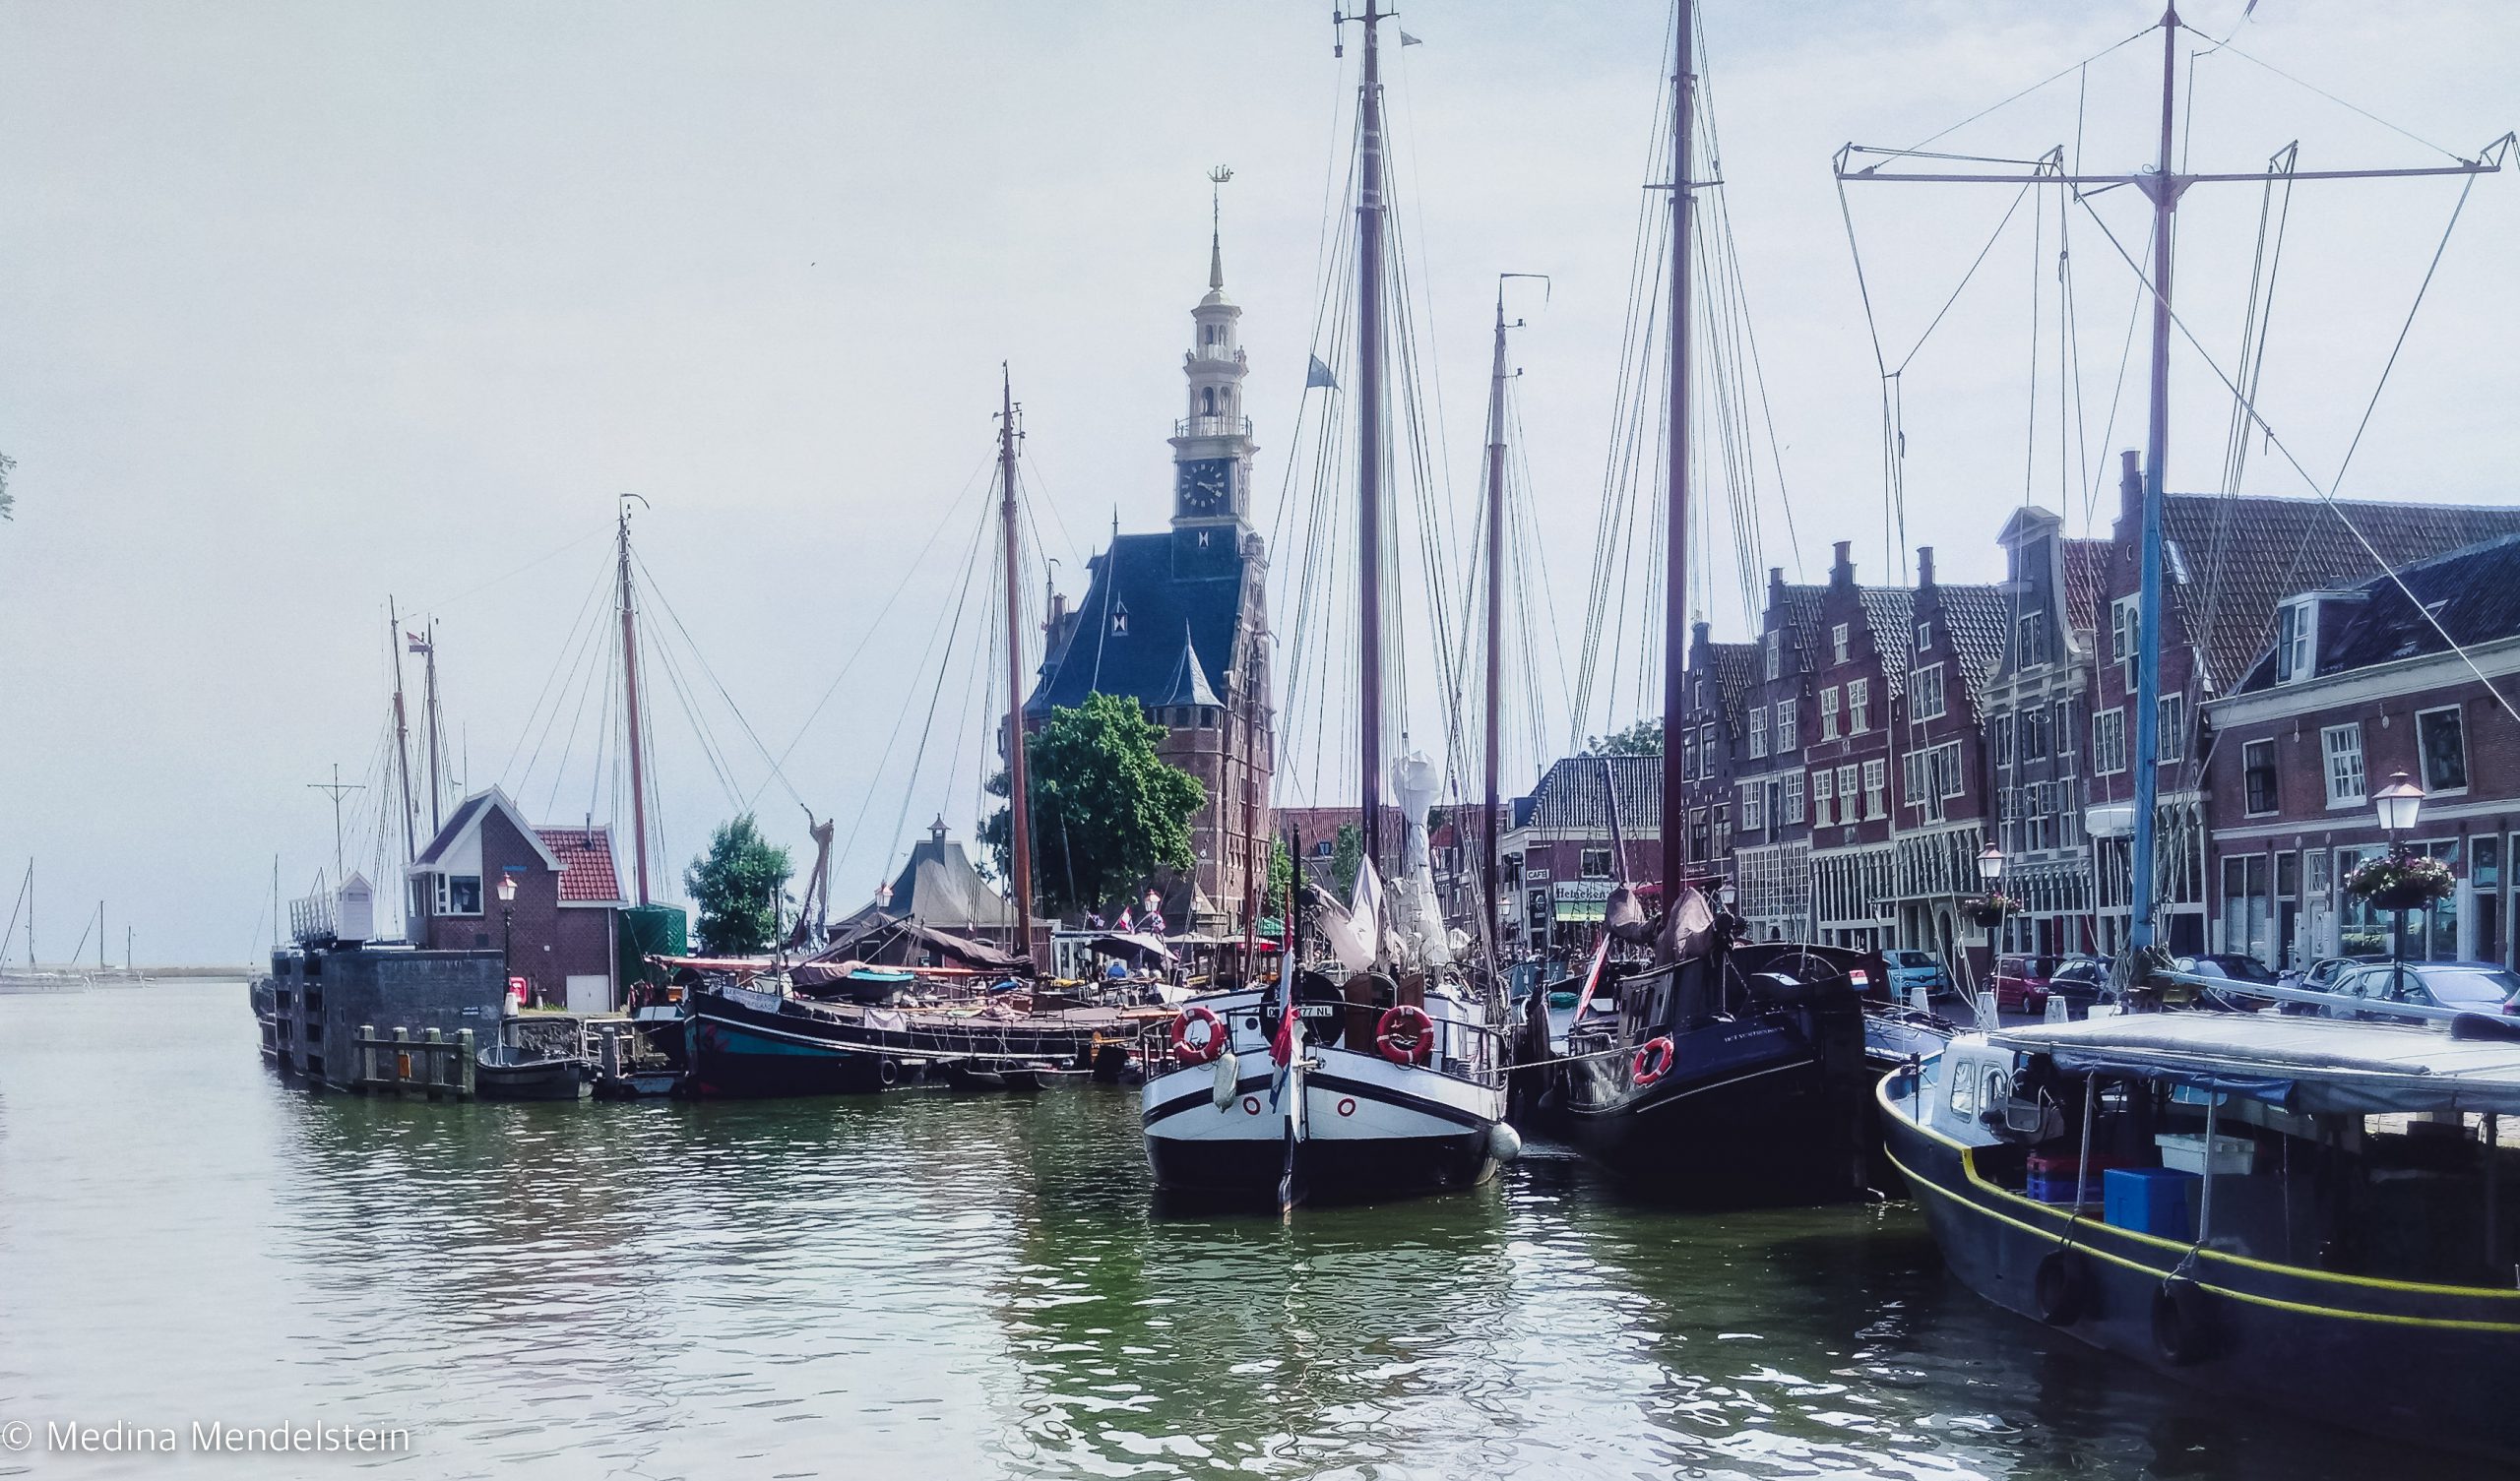 Flusskreuzfahrt nach Hoorn, Niederlande: Alte Schiffe liegen im Hafenbecken.